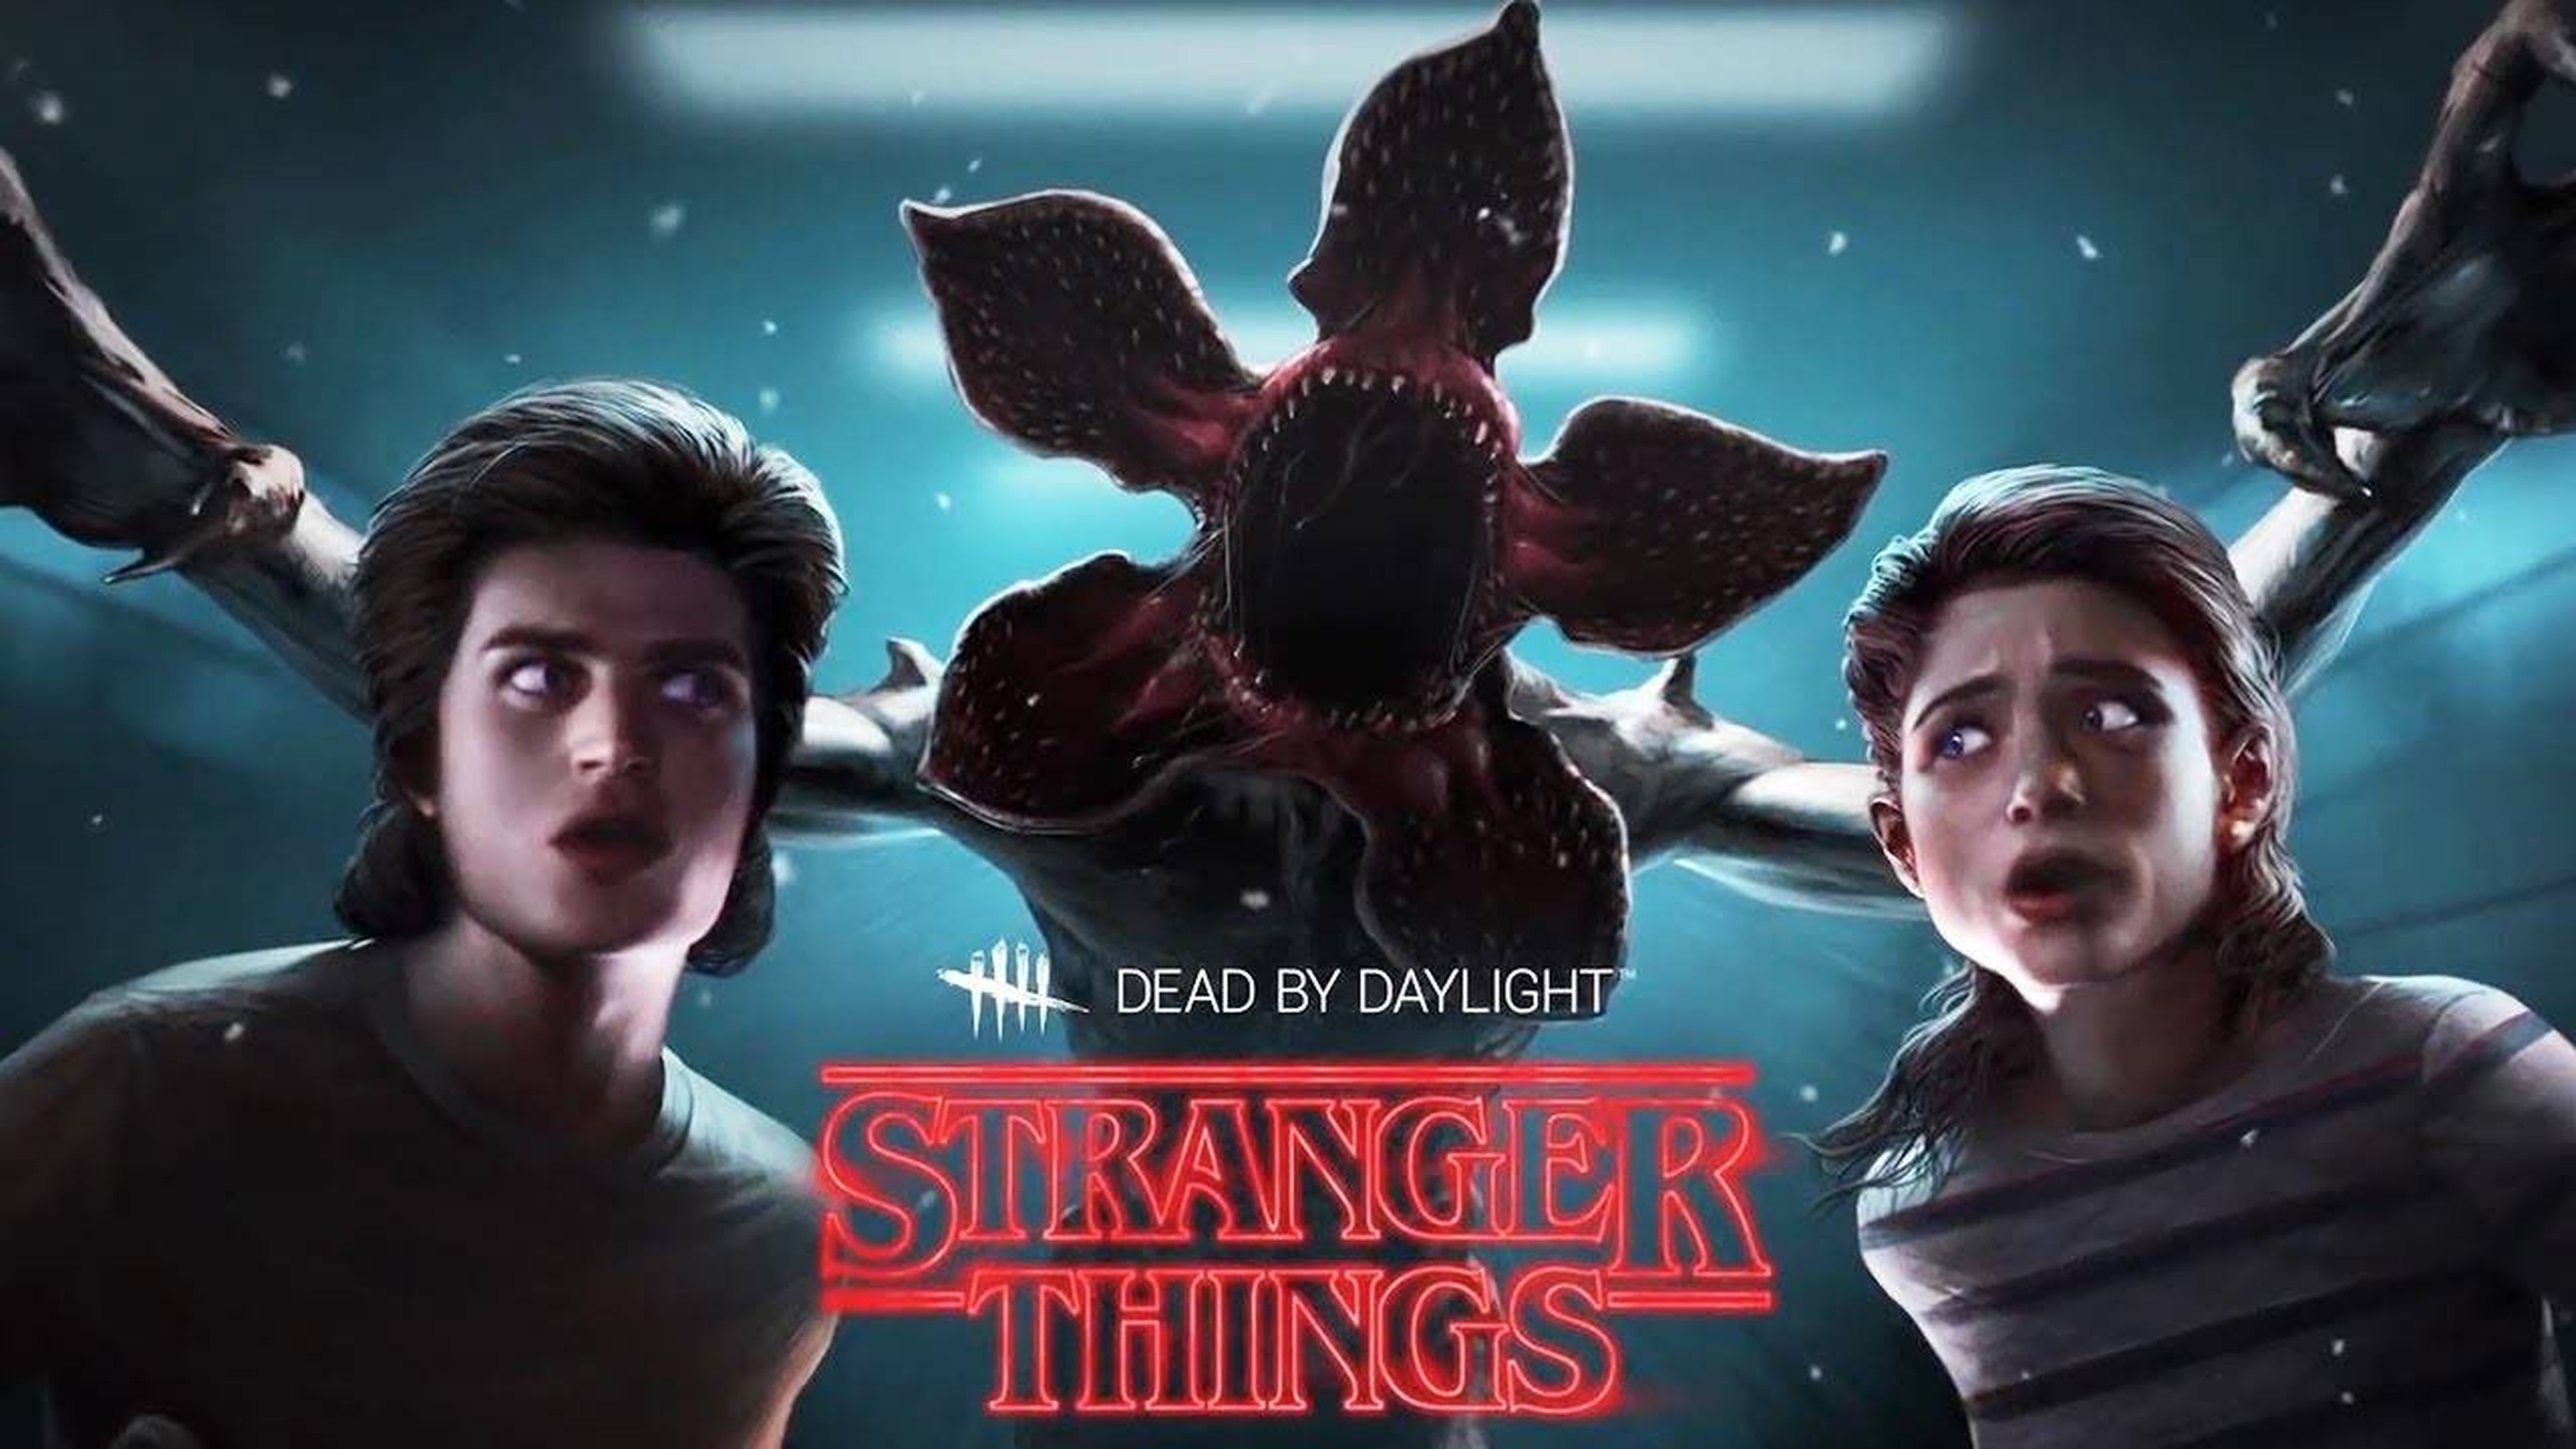 Además de tener su propio videojuego, los personajes y monstruos de la serie 'Stranger Things' han aparecido en el juego de terror online 'Dead by Daylight'.